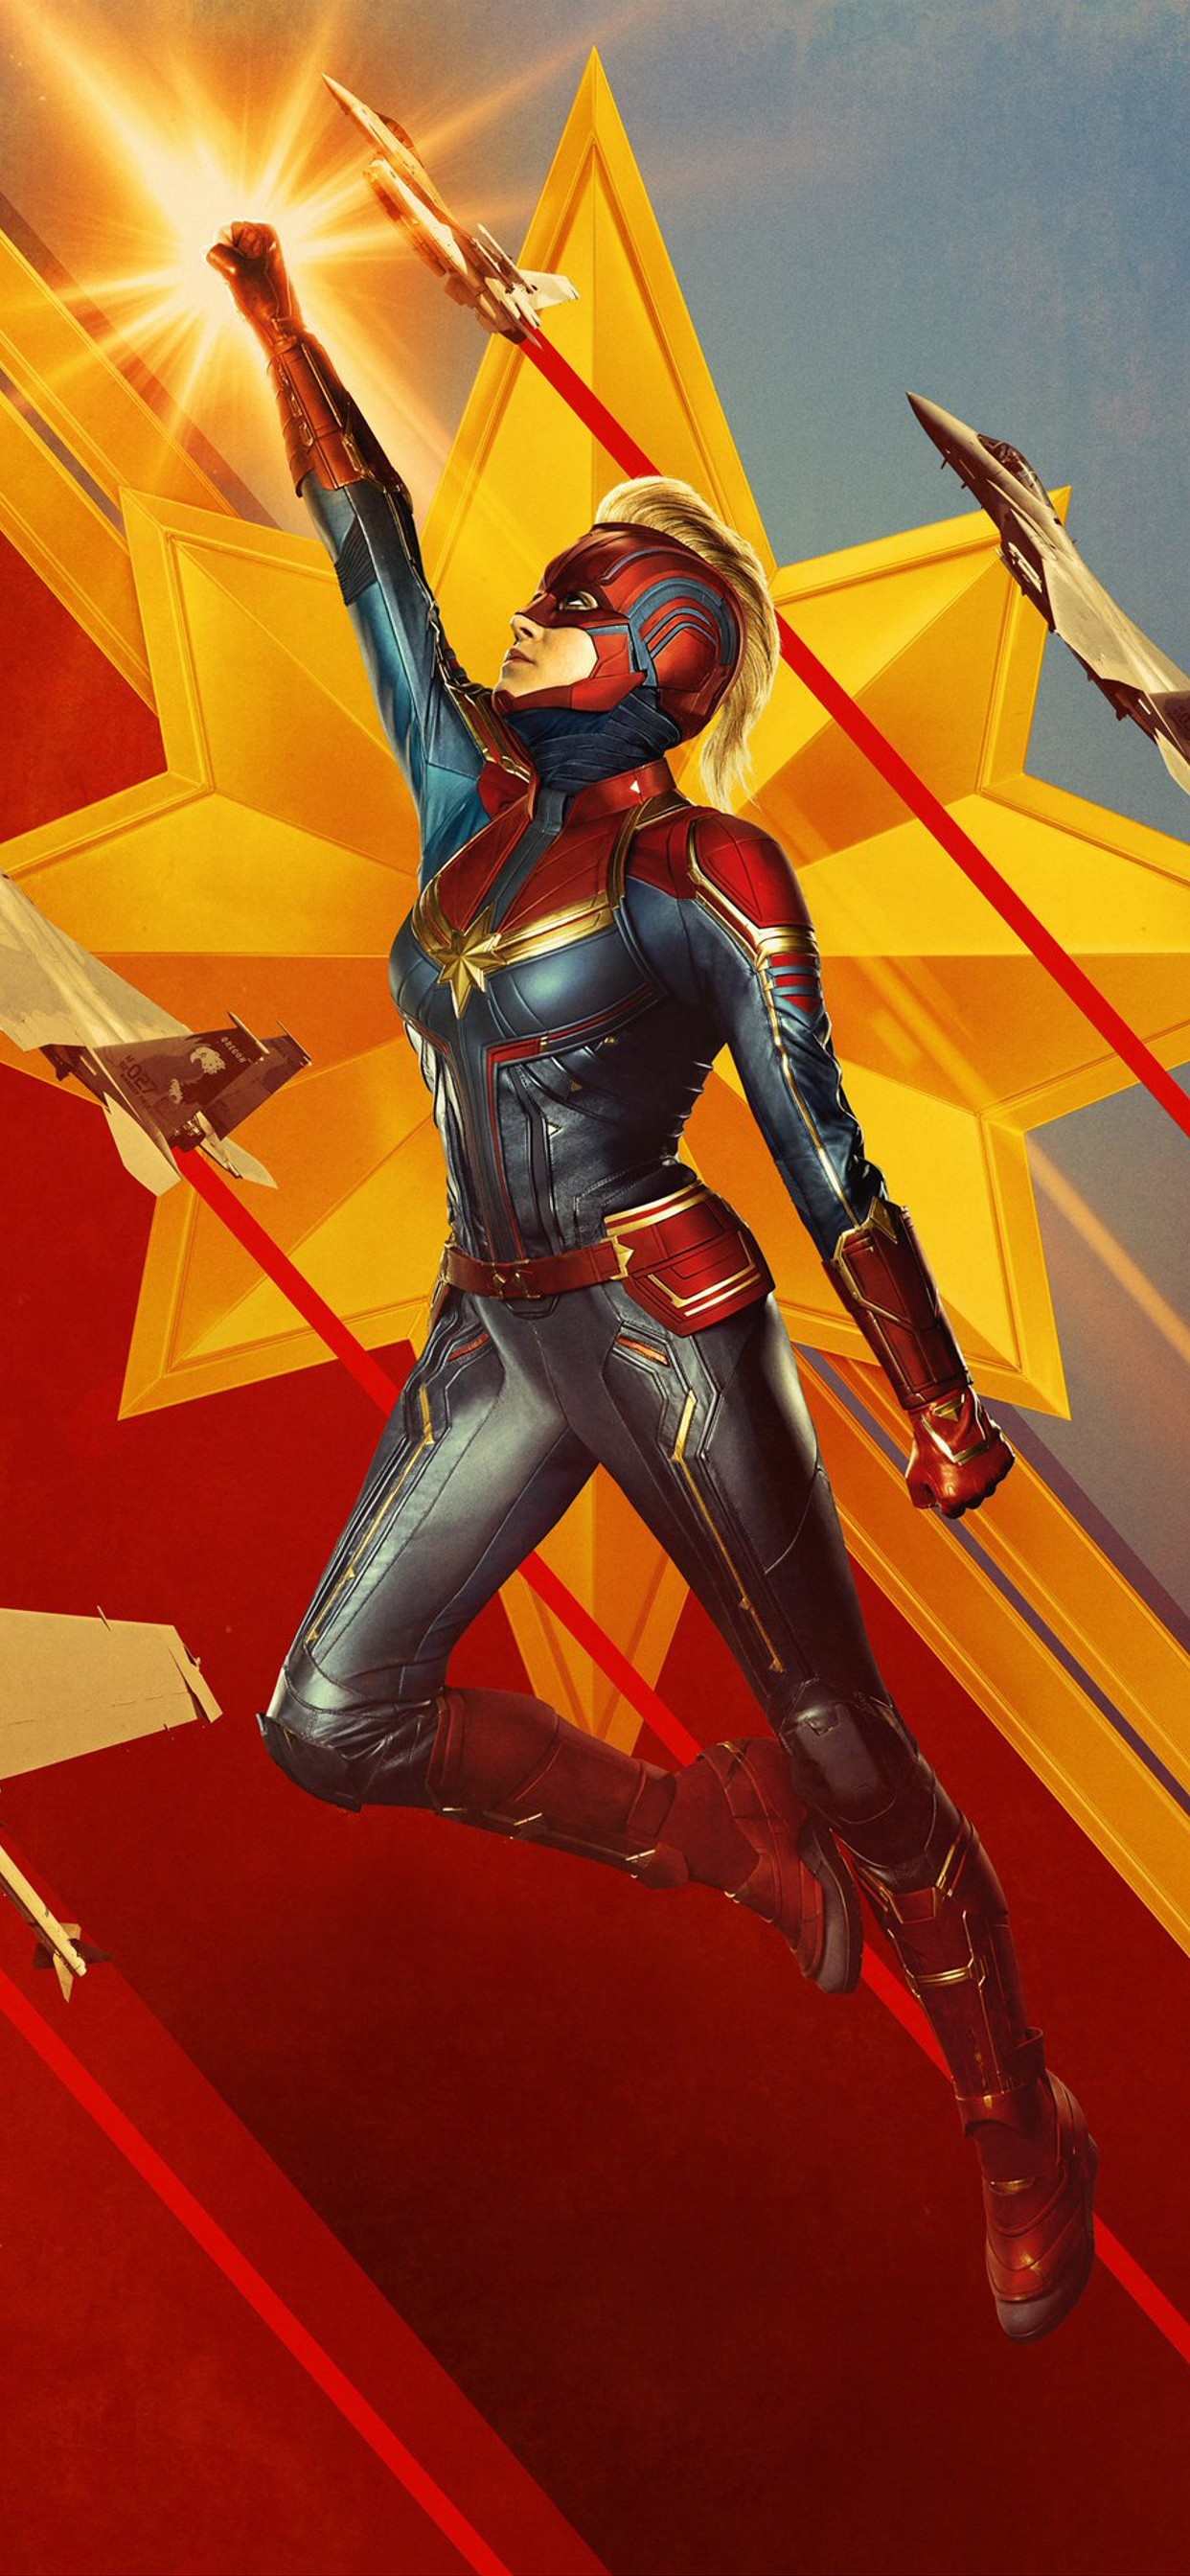 《惊奇队长/Captain Marvel》海报2019